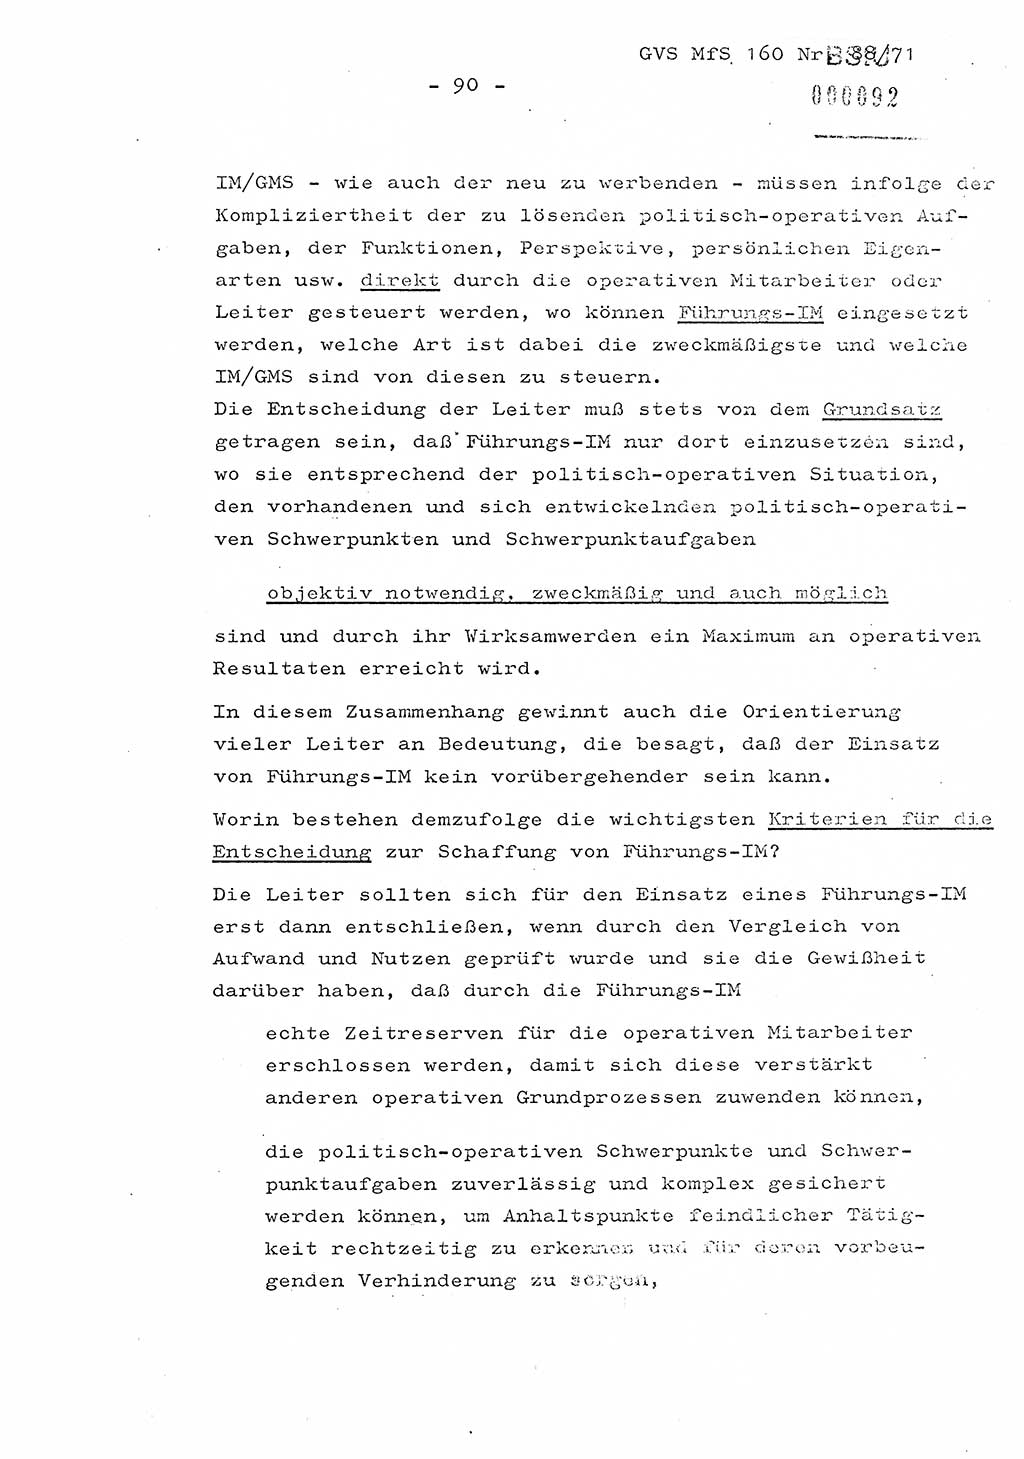 Dissertation Oberstleutnant Josef Schwarz (BV Schwerin), Major Fritz Amm (JHS), Hauptmann Peter Gräßler (JHS), Ministerium für Staatssicherheit (MfS) [Deutsche Demokratische Republik (DDR)], Juristische Hochschule (JHS), Geheime Verschlußsache (GVS) 160-88/71, Potsdam 1972, Seite 90 (Diss. MfS DDR JHS GVS 160-88/71 1972, S. 90)